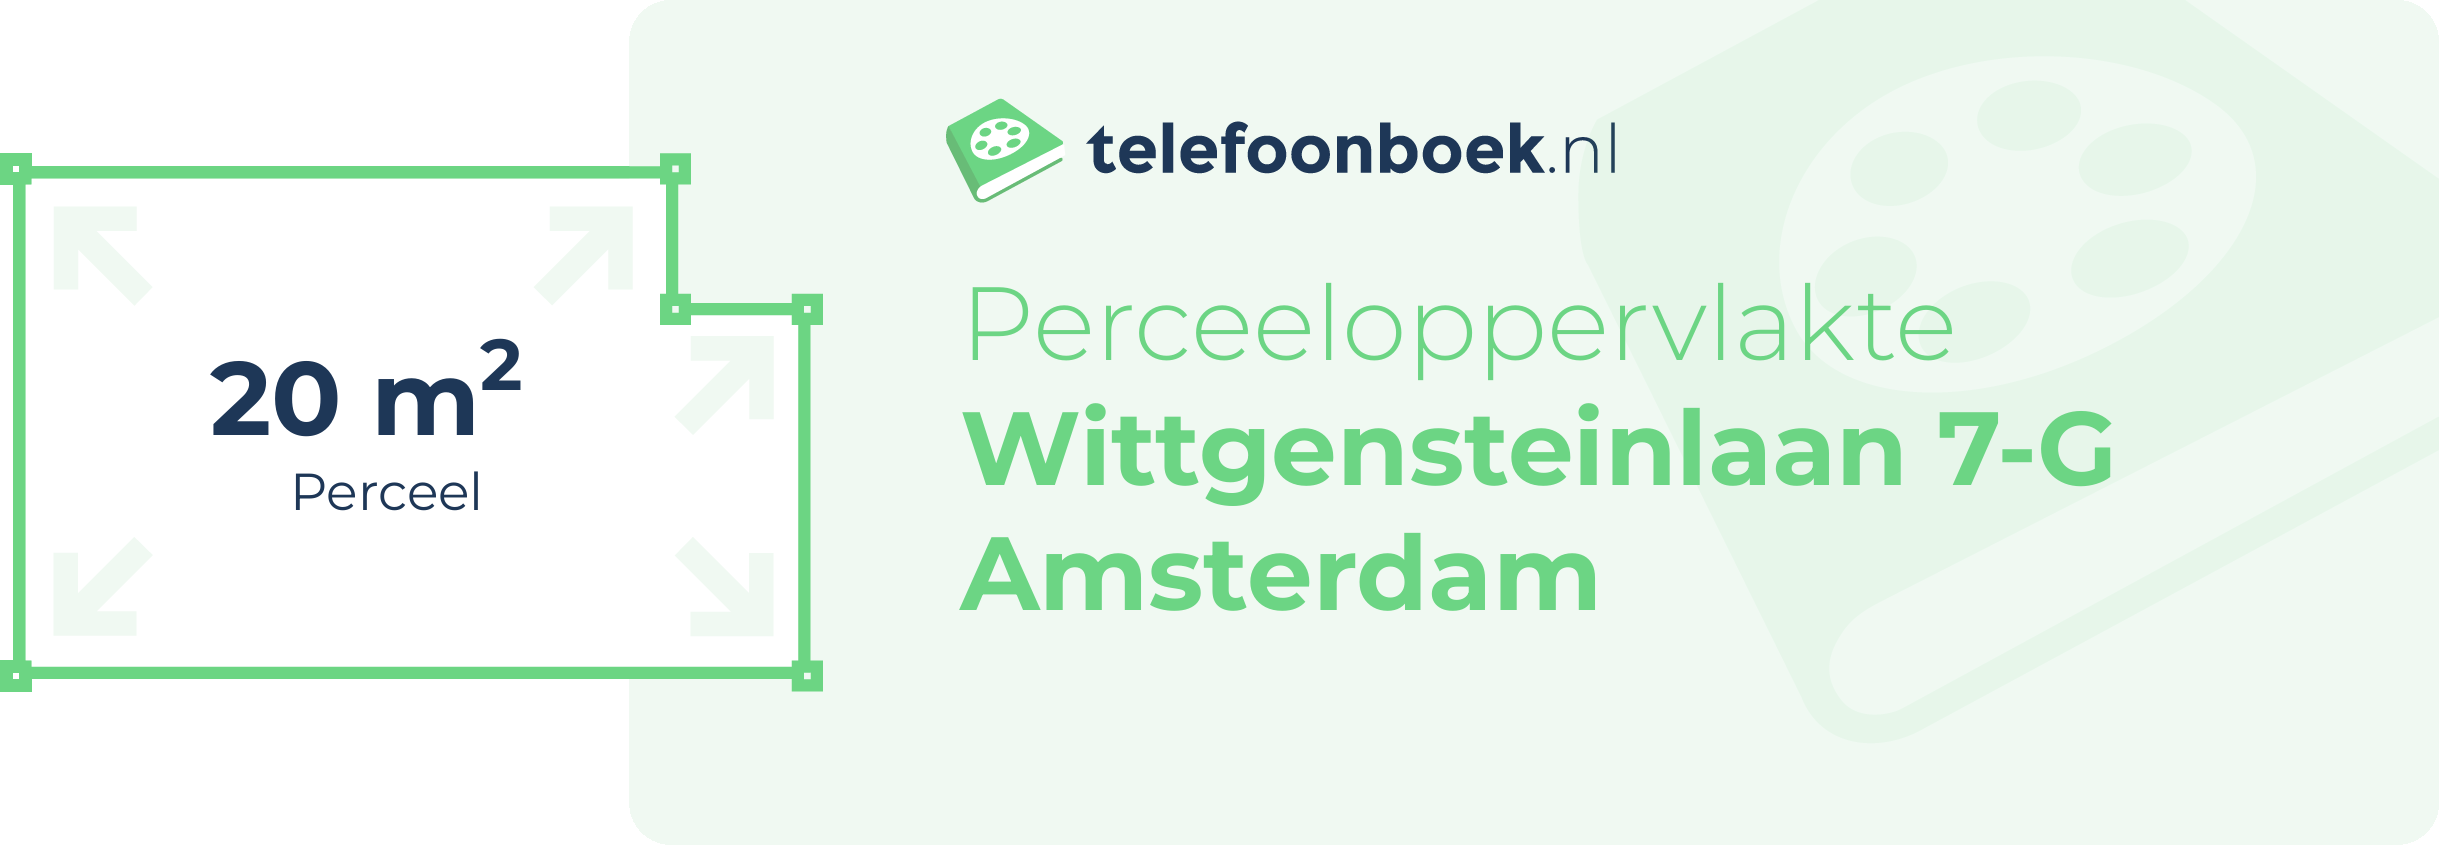 Perceeloppervlakte Wittgensteinlaan 7-G Amsterdam